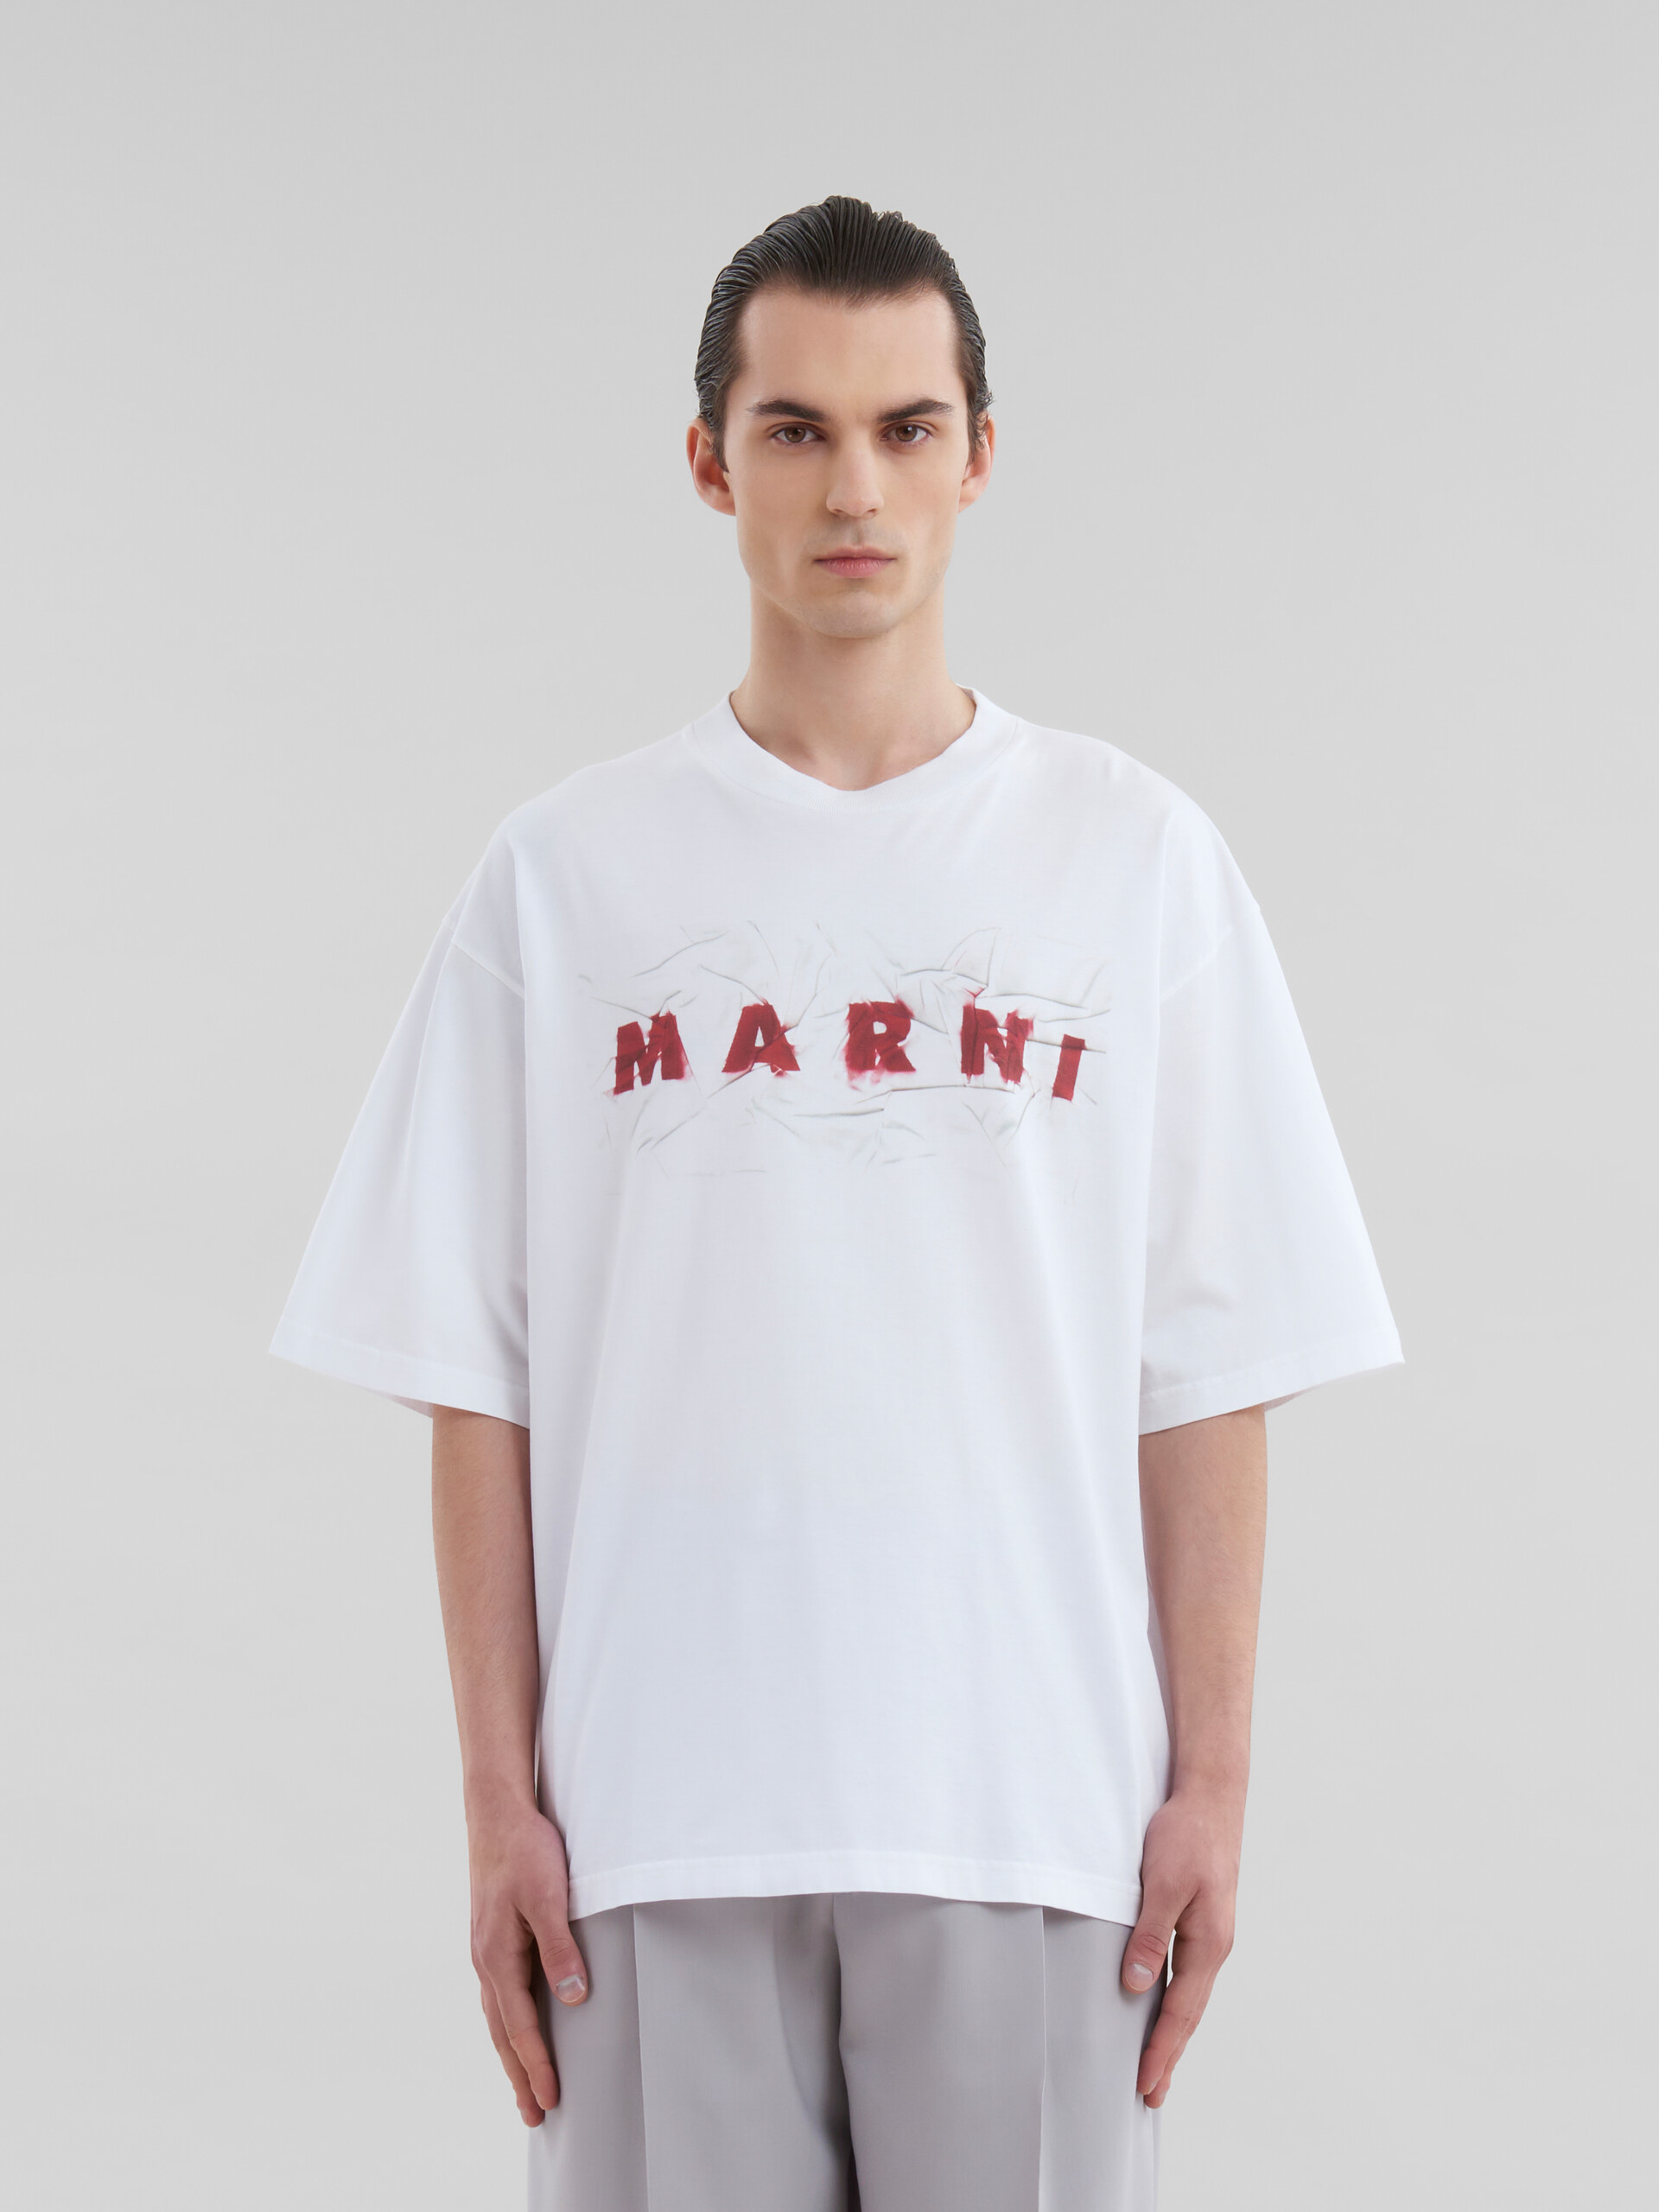 T-shirt in cotone biologico bianco con logo Marni stropicciato - T-shirt - Image 2